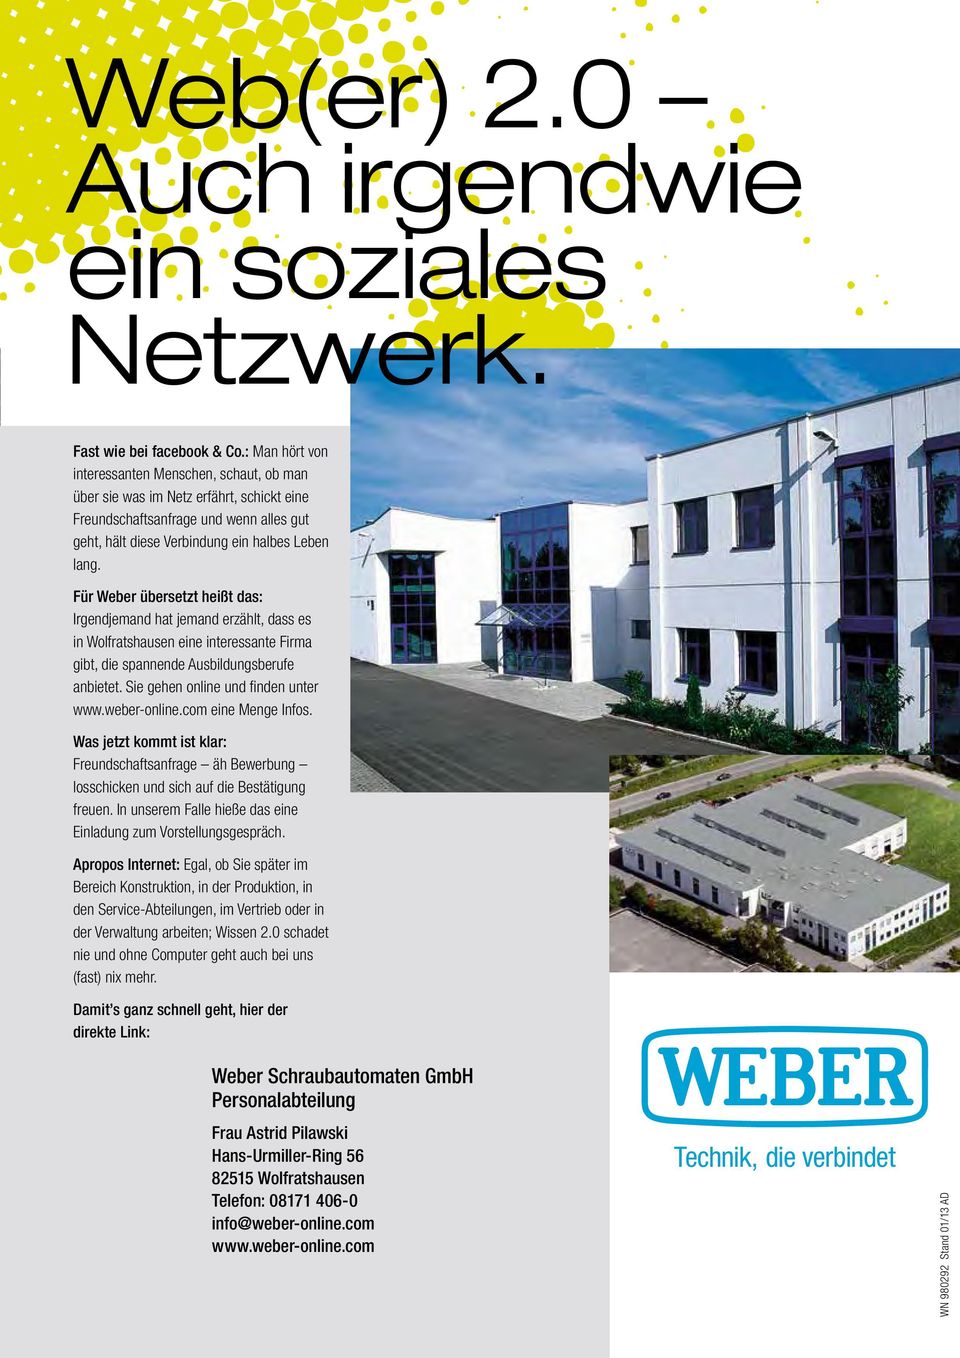 Für Weber übersetzt heißt das: Irgendjemand hat jemand erzählt, dass es in Wolfratshausen eine interessante Firma gibt, die spannende Ausbildungsberufe anbietet. Sie gehen online und finden unter www.